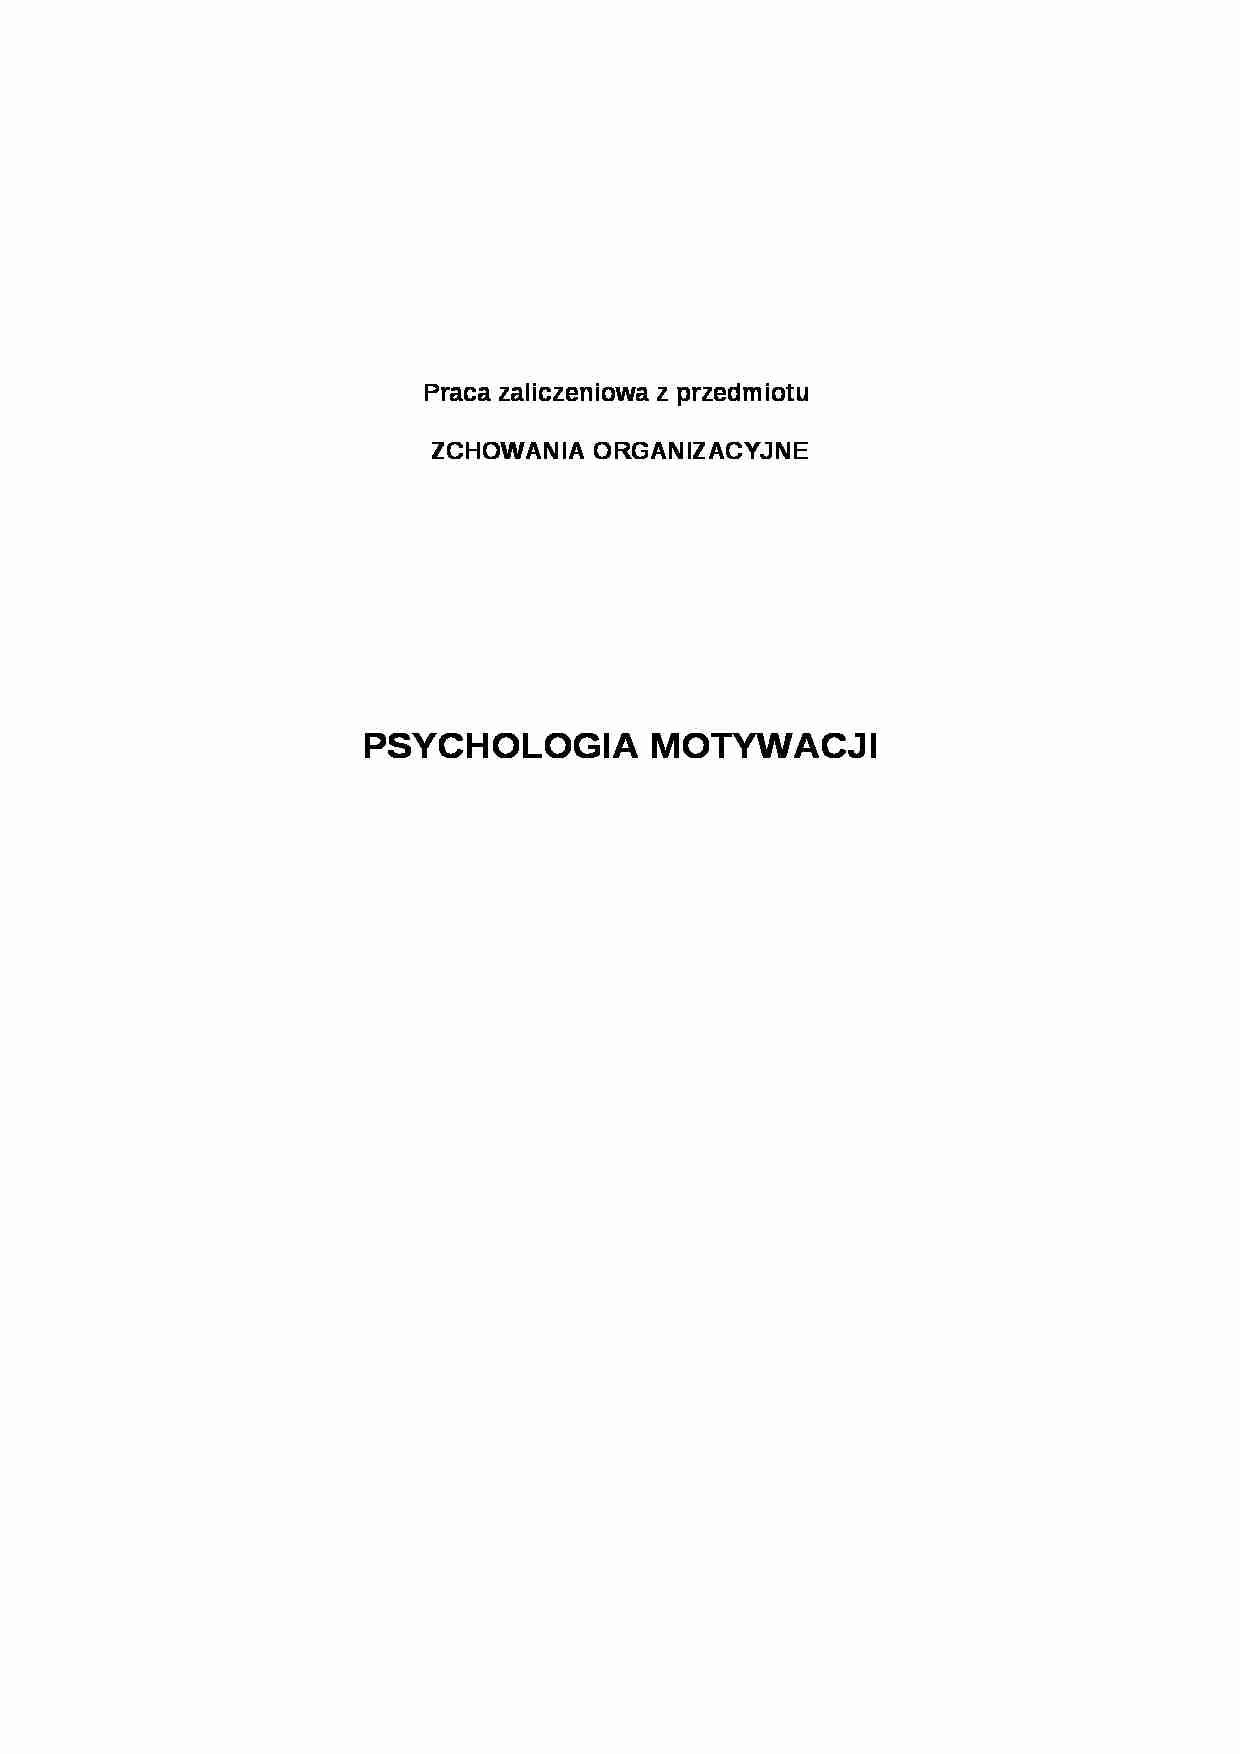 psychologia motywacji - praca zaliczeniowa - strona 1